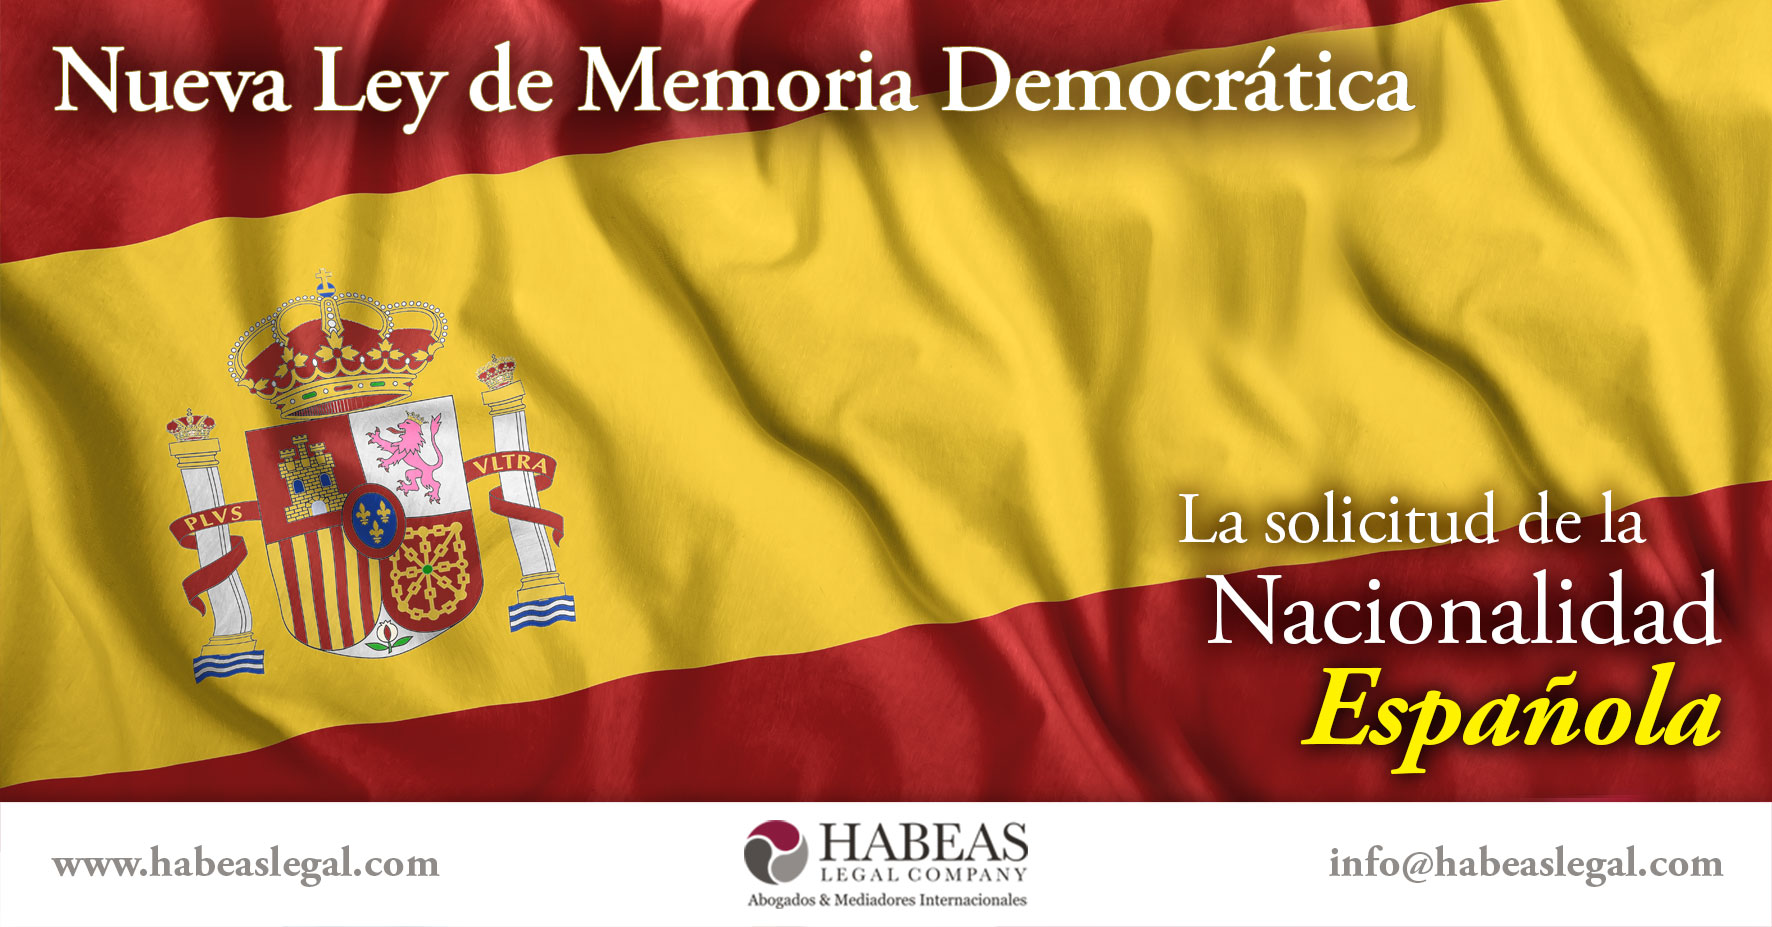 Nueva Ley de Memoria Democrática para la solicitud de Nacionalidad Española, Habeas Legal te ayuda a tramitarla